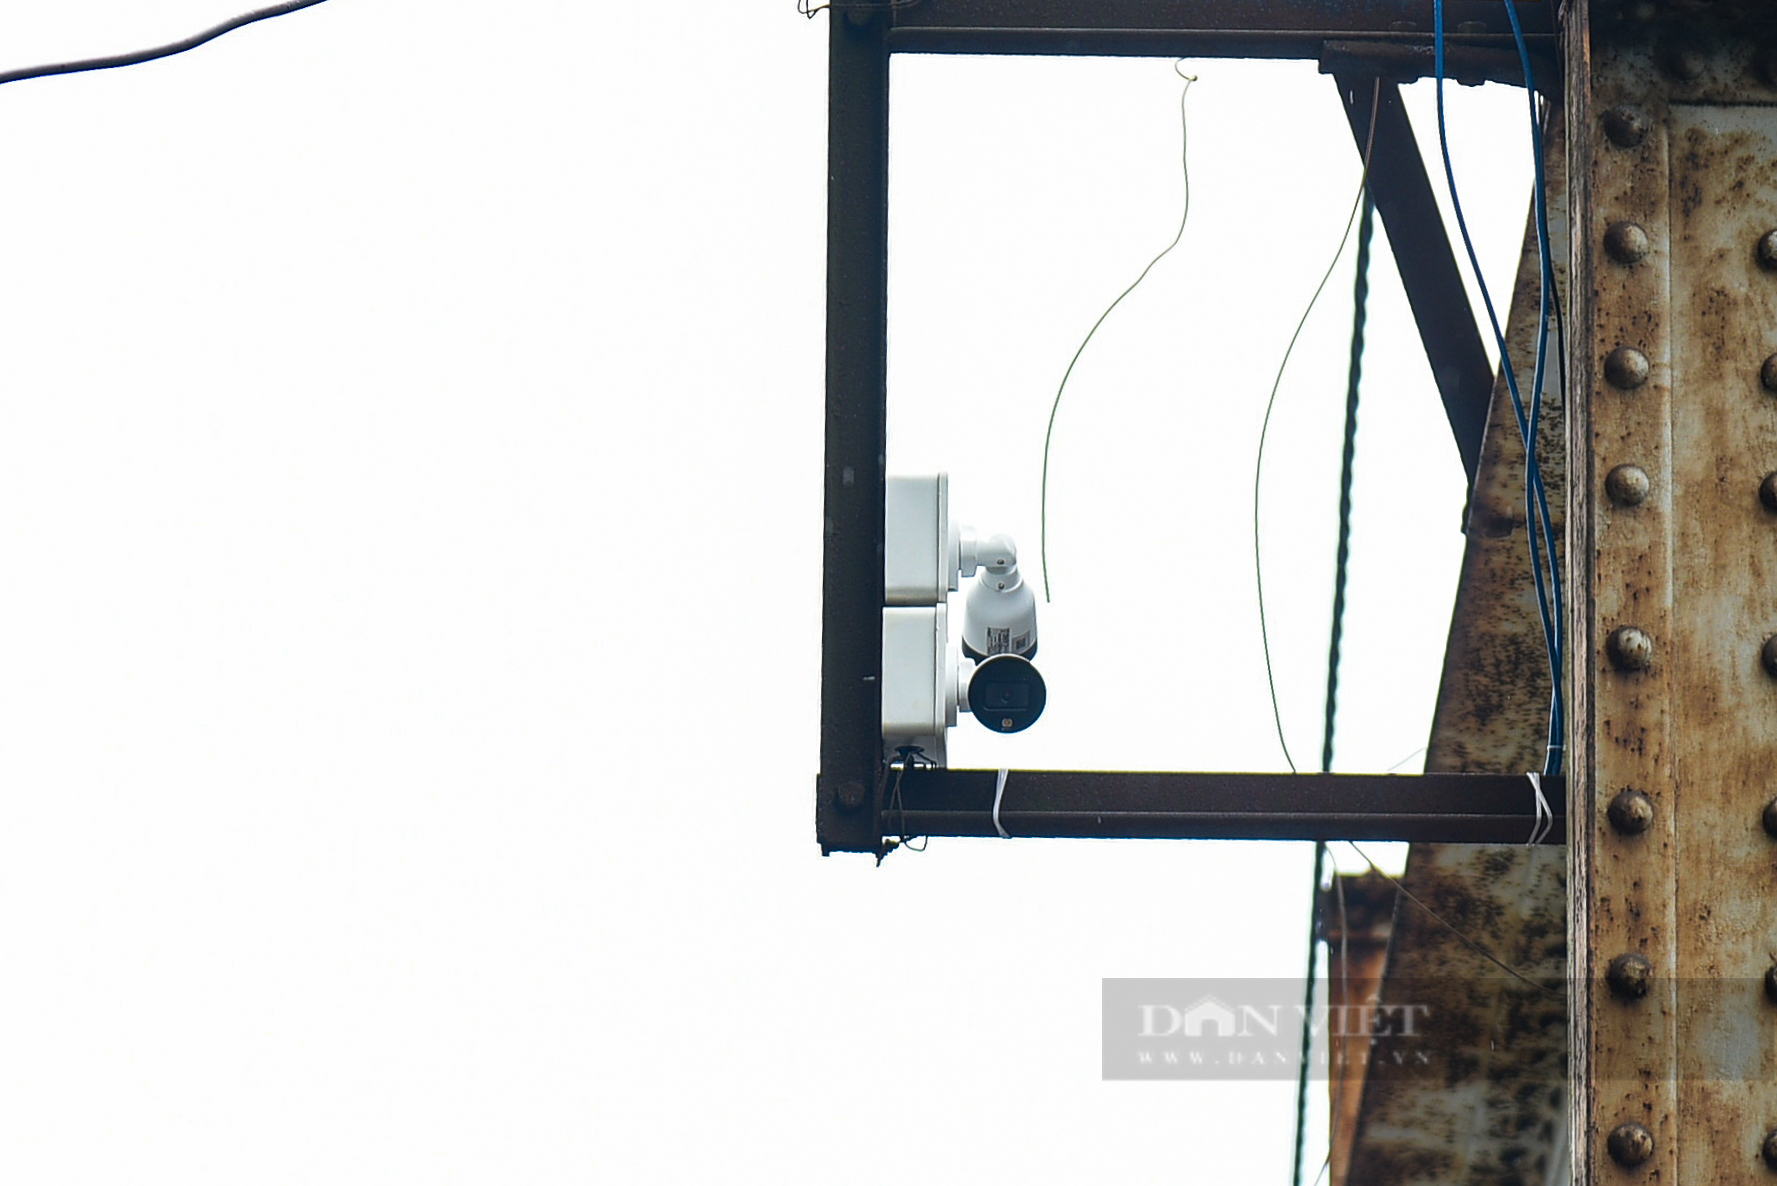 Cận cảnh 8 camera phạt nguội được lắp đặt trên cầu Long Biên - Ảnh 10.